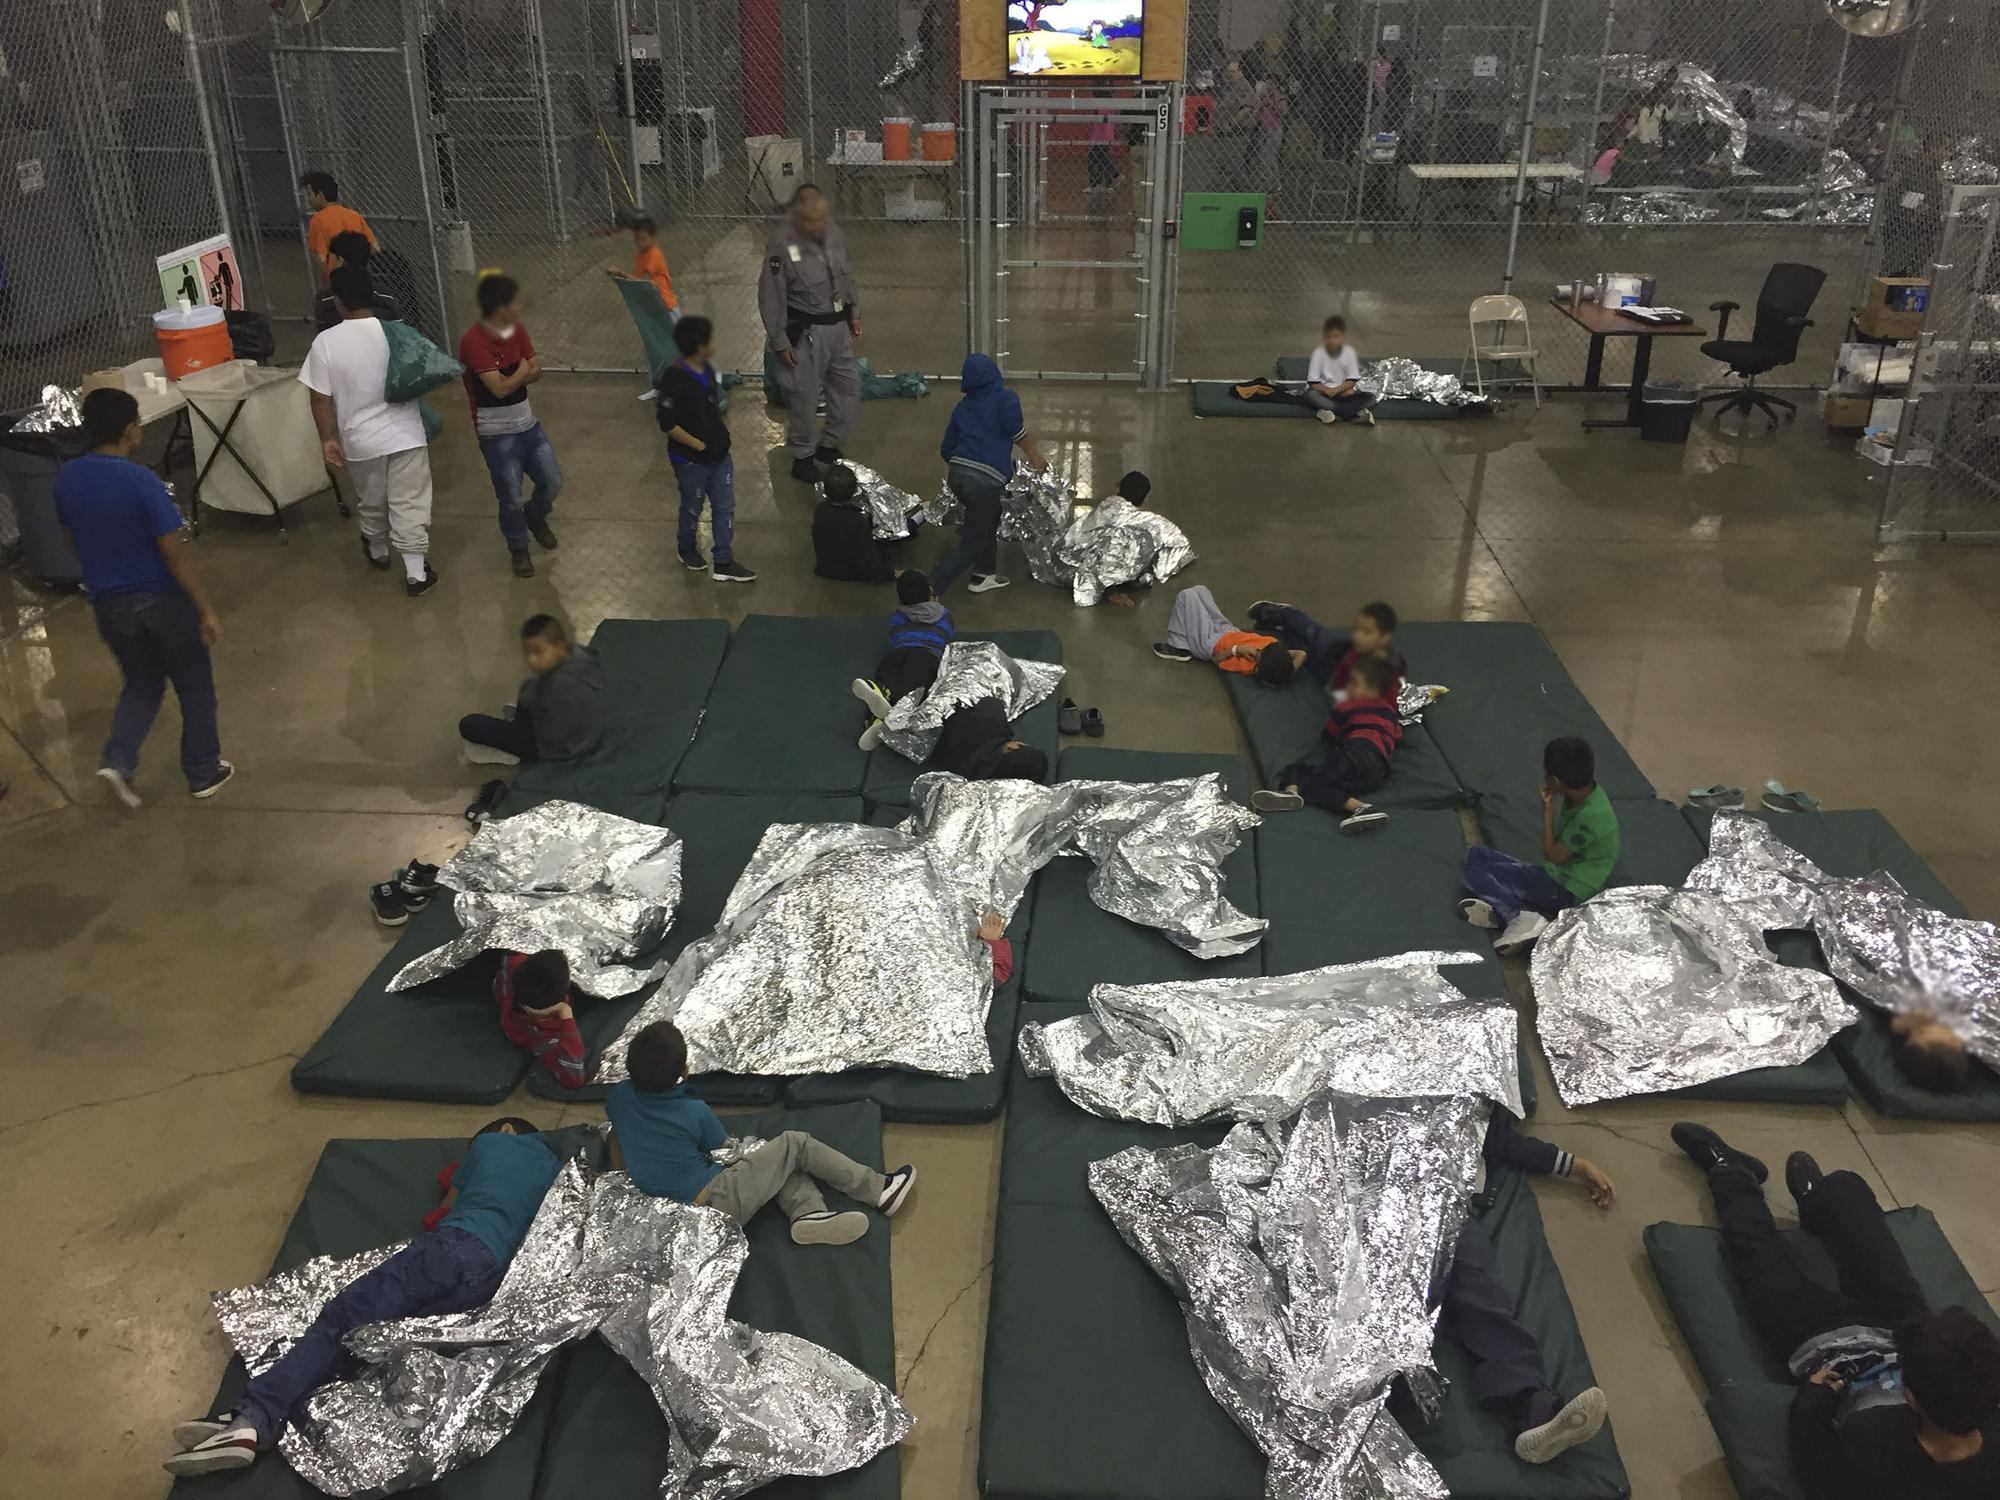 Les images du centre de rétention de McAllen fournies par le contrôle aux frontières montrent des enfants drapés de couvertures de survie. [AFP - US Customs and Border Protection]